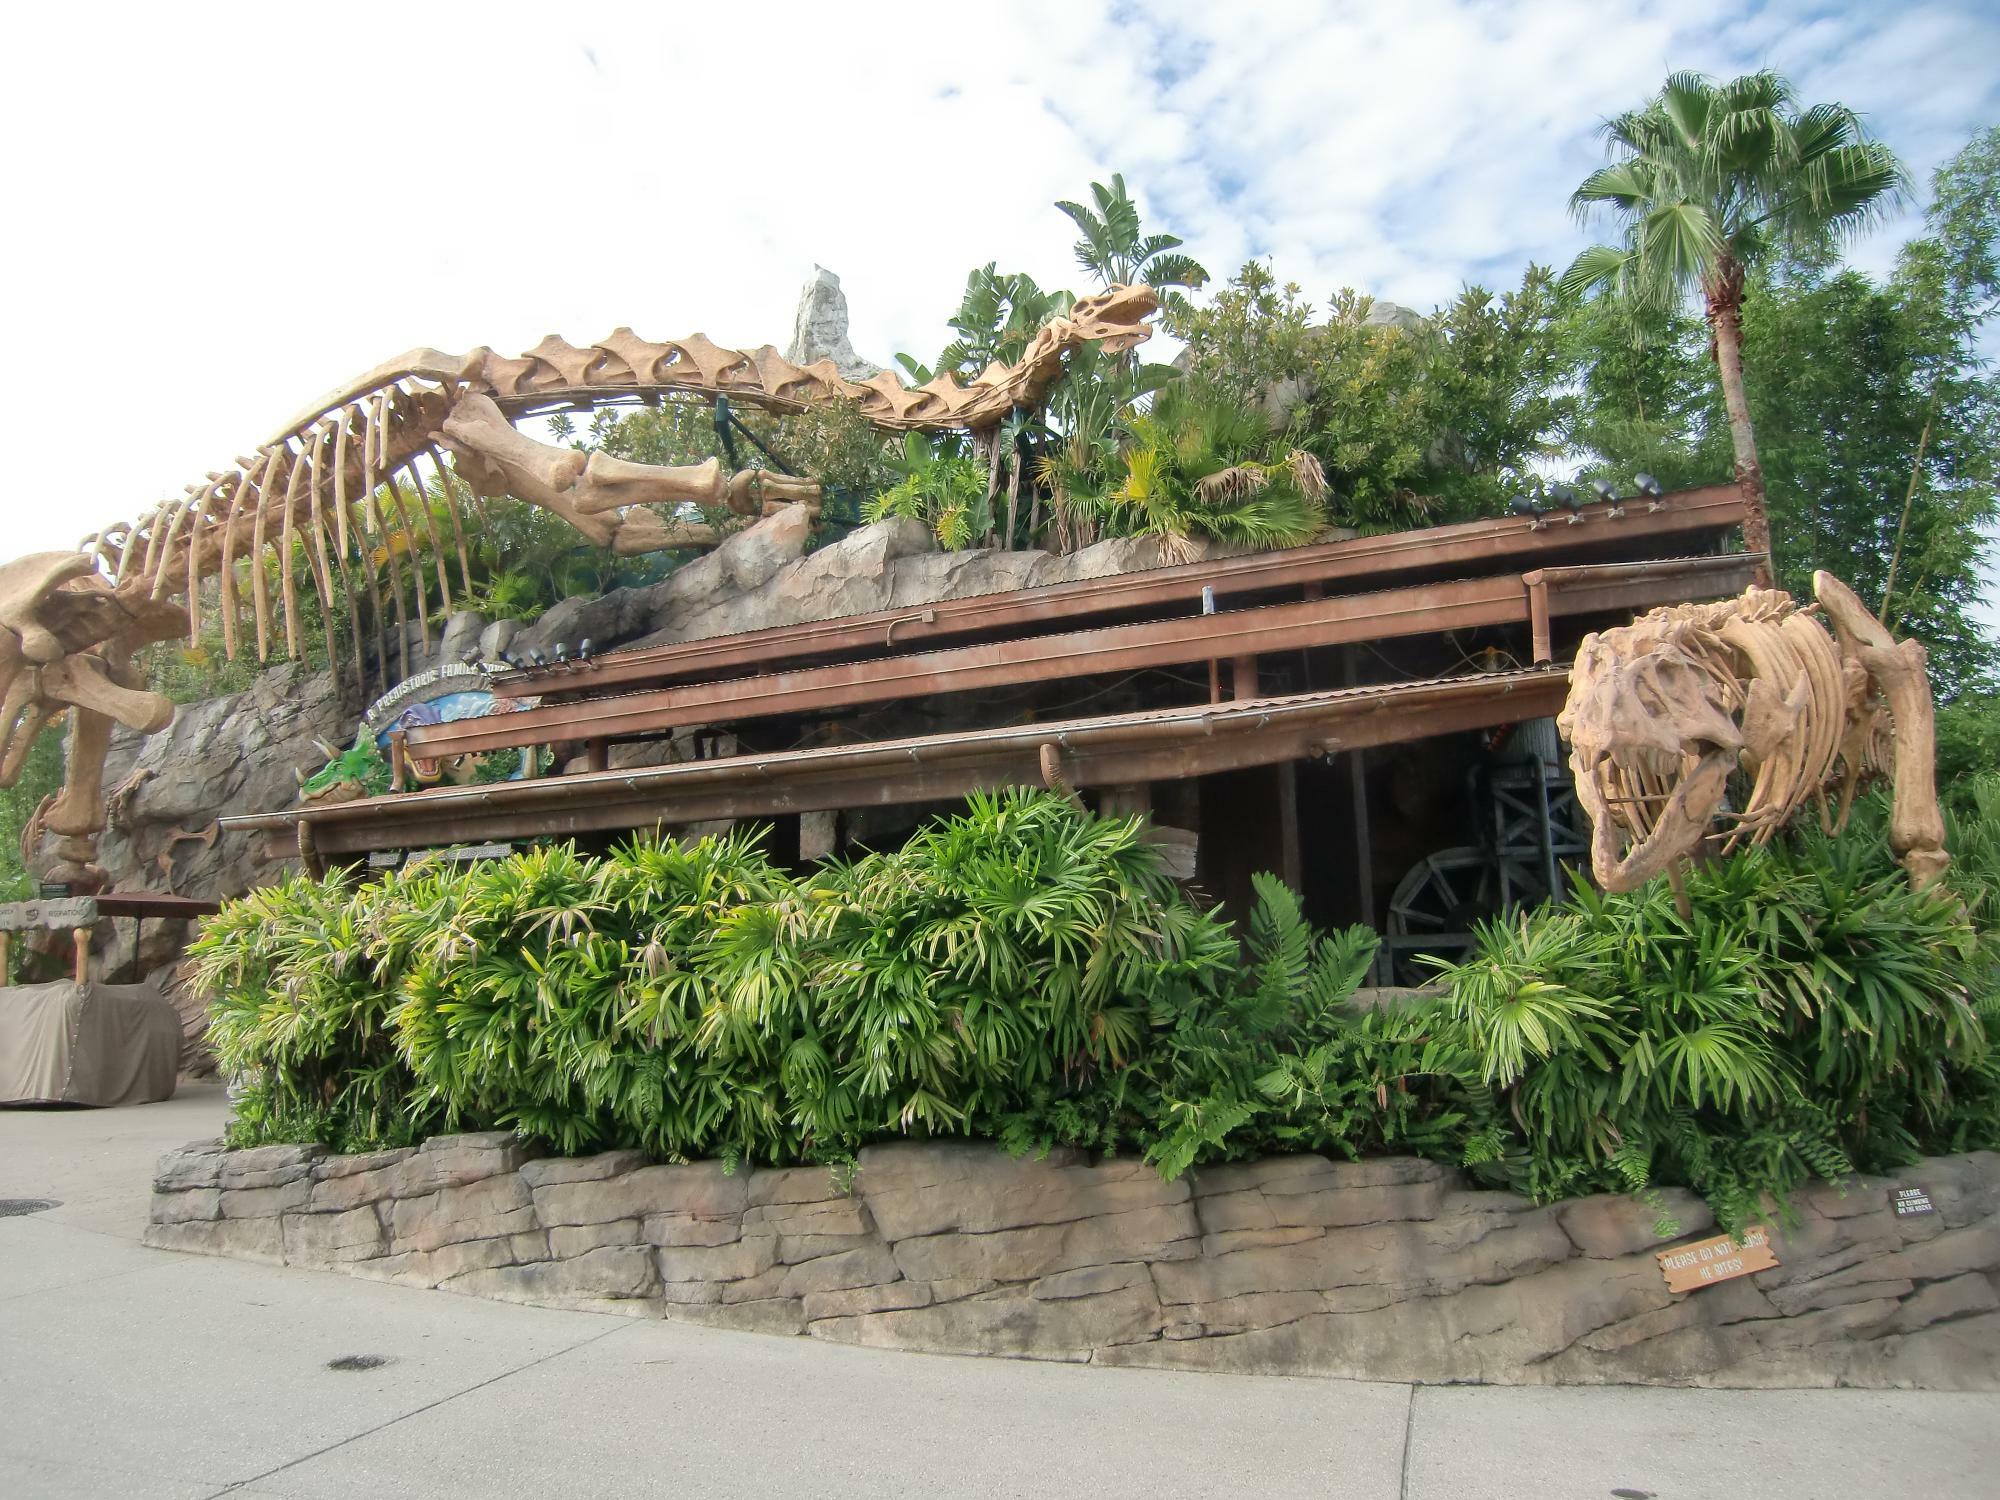 米国フロリダ州、ウォルト・ディズニー・ワールドリゾート内「ダウンタウン・ディズニー」内のT-REX Restaurant。太古の恐竜の世界に思いを馳せながら食事が楽しめる（2014年筆者撮影）。